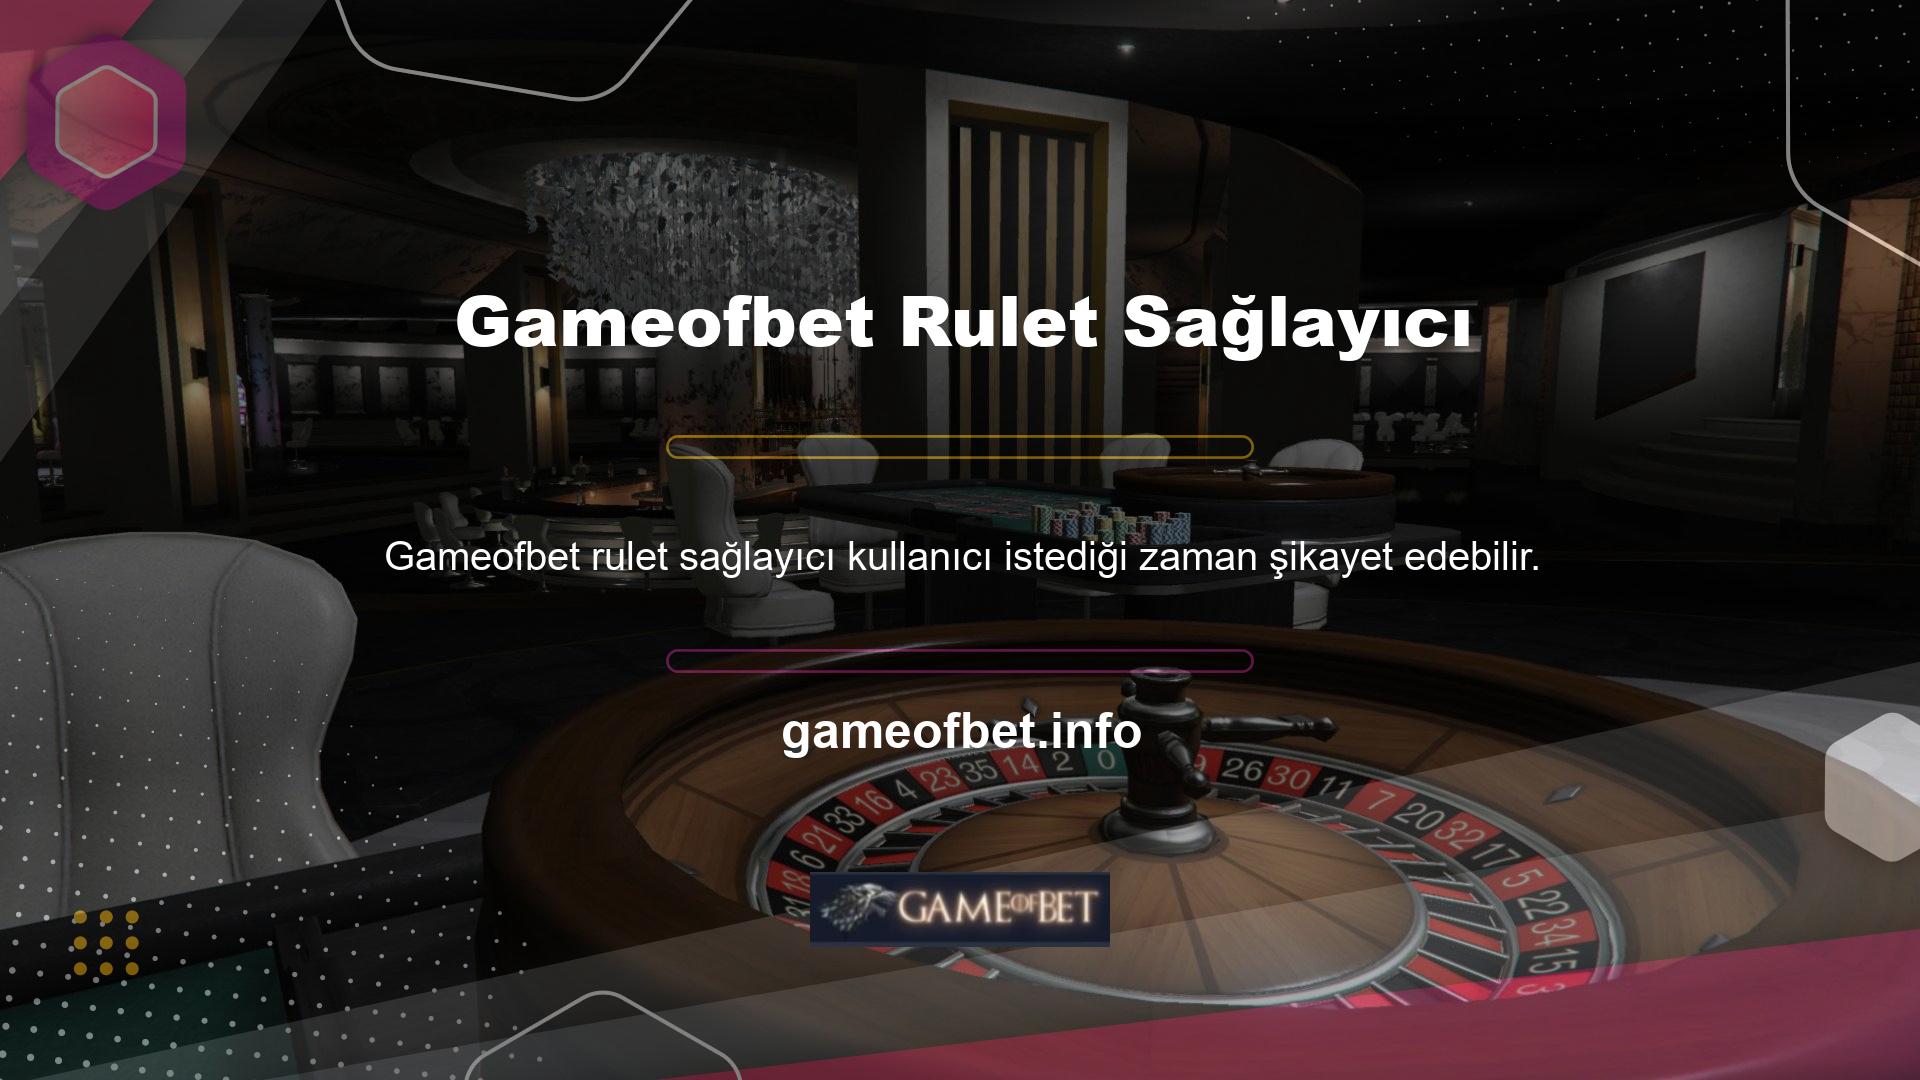 Gameofbet kullanıcısının rulet sağlayıcısından gelen şikayetler müşteri temsilcisi tarafından onaylanıp değerlendirilecek ve sorun veya talep çözümlenerek kullanıcıya iletilecektir